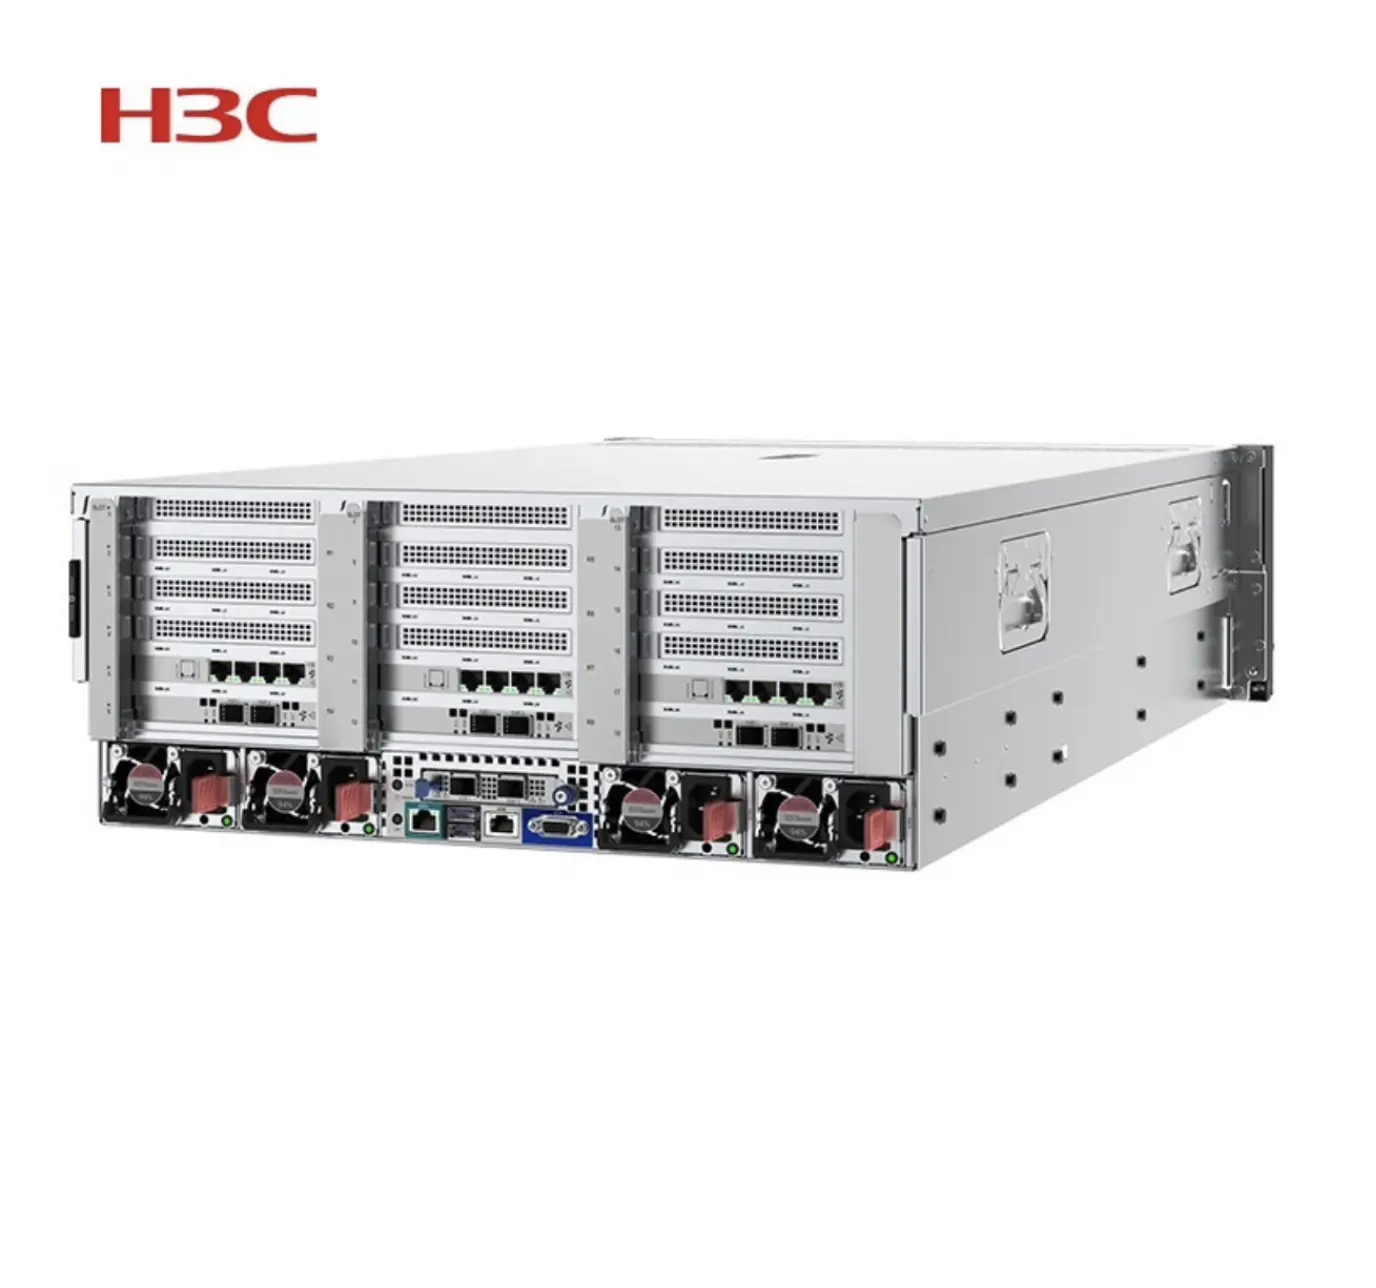 خوادم جديدة عالية الجودة H3C R6900G5 لخازن مركز البيانات